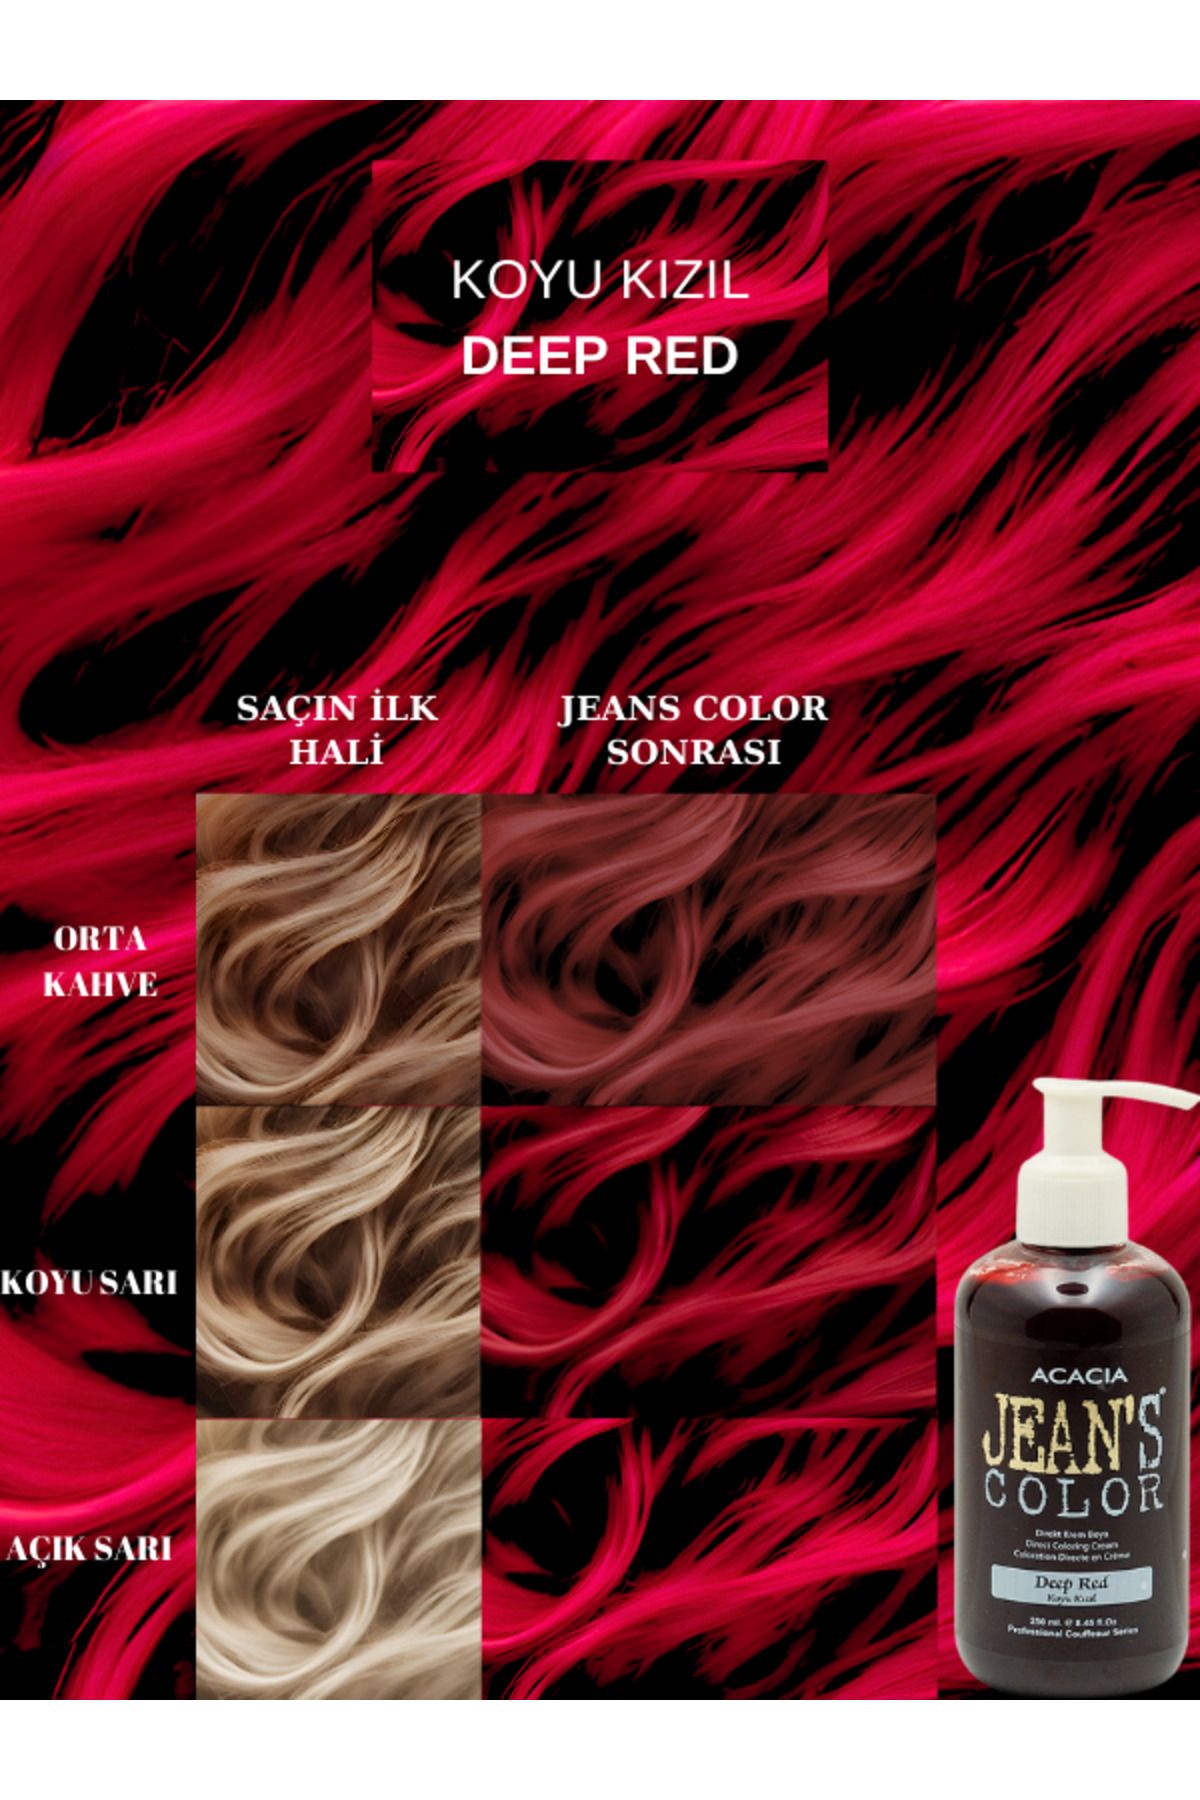 jeans color Amonyaksız Renkli Saç Boyası Koyu Kızıl 250ml. Kokusuz Su Bazlı Deep Red Hair Dye